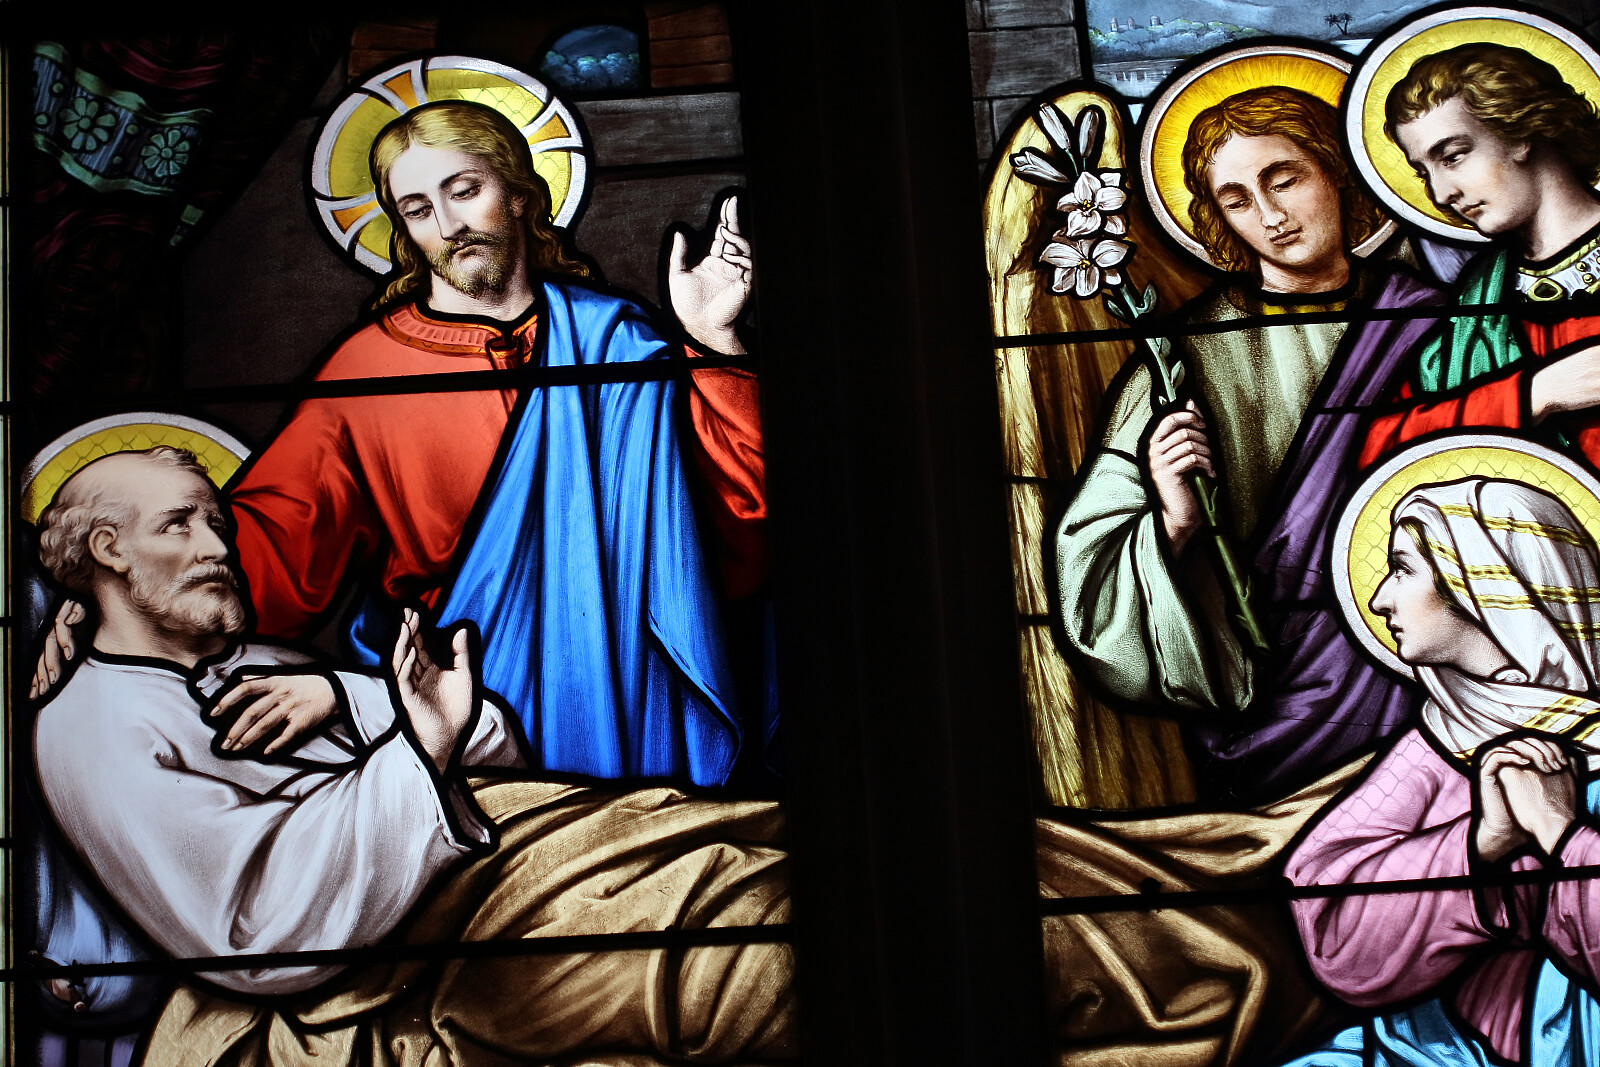 Śmierć św. Józefa - Ideefixe, CC BY-SA 4.0 www.creativecommons.org, via Wikimedia Commons